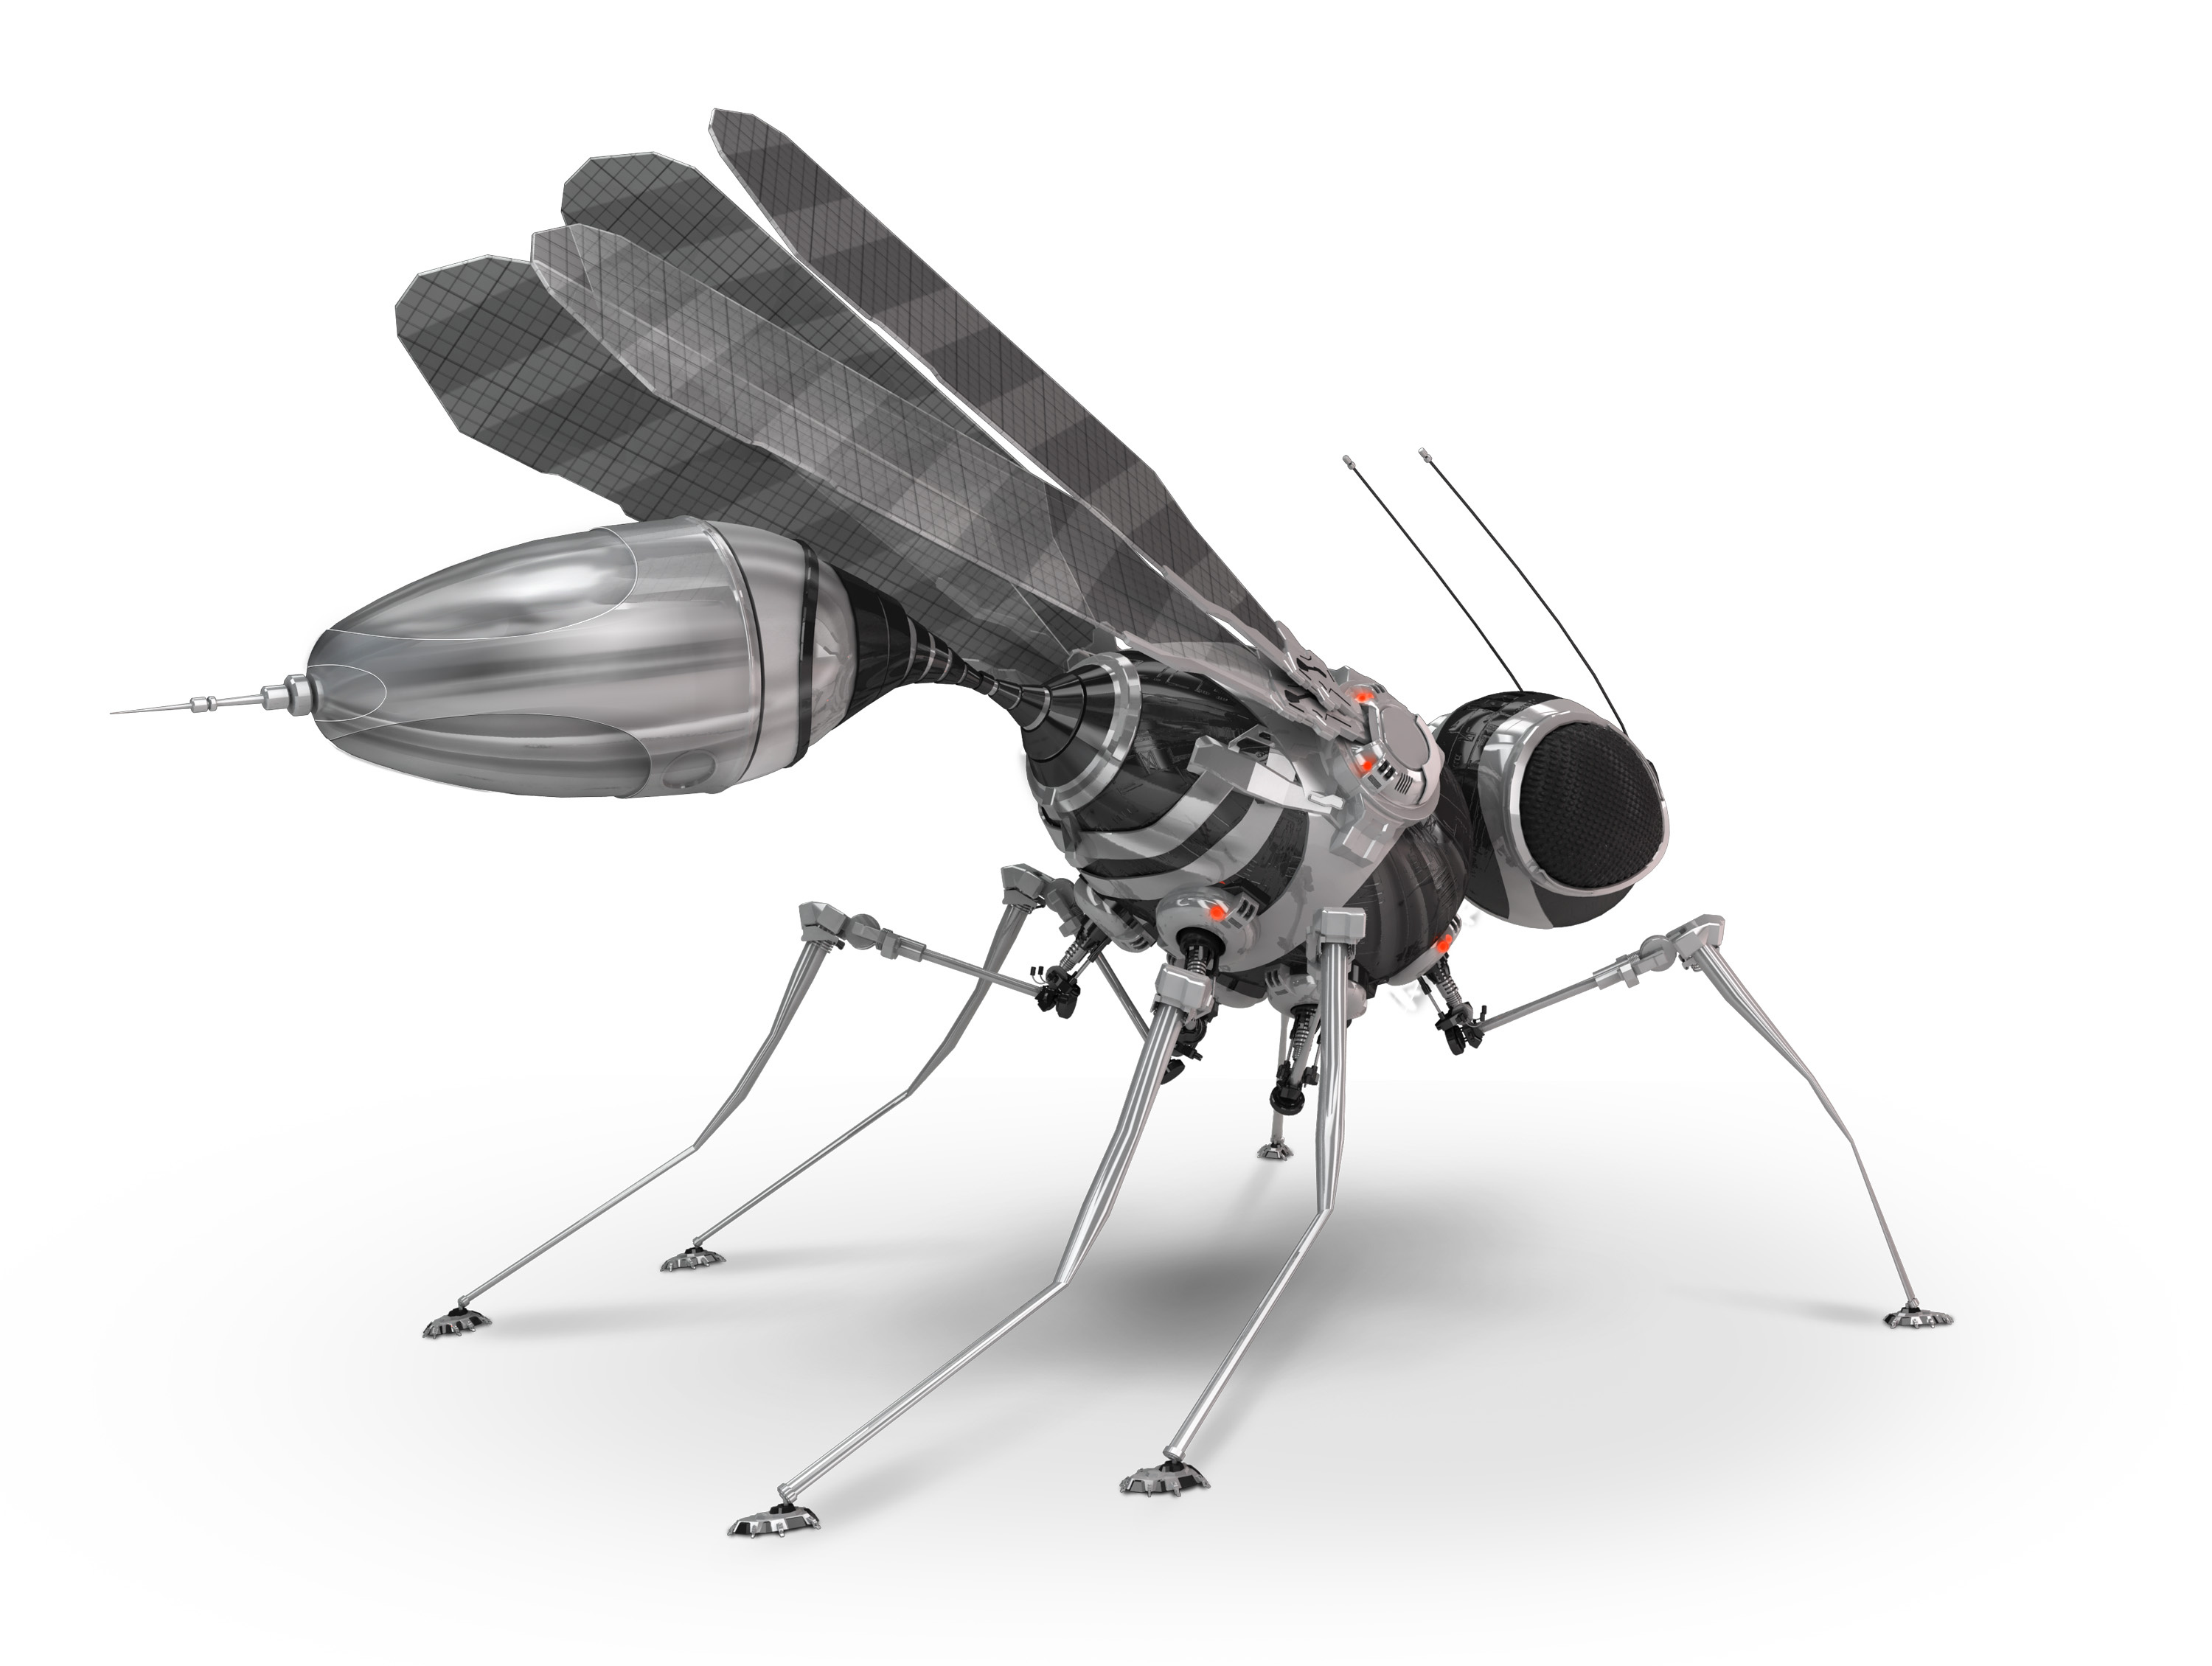 Face à la disparition des insectes pollinisateurs, le futur sera-t-il peuplé de mini-robots pour effectuer cette tâche ? © iuneWind, Adobe Stock